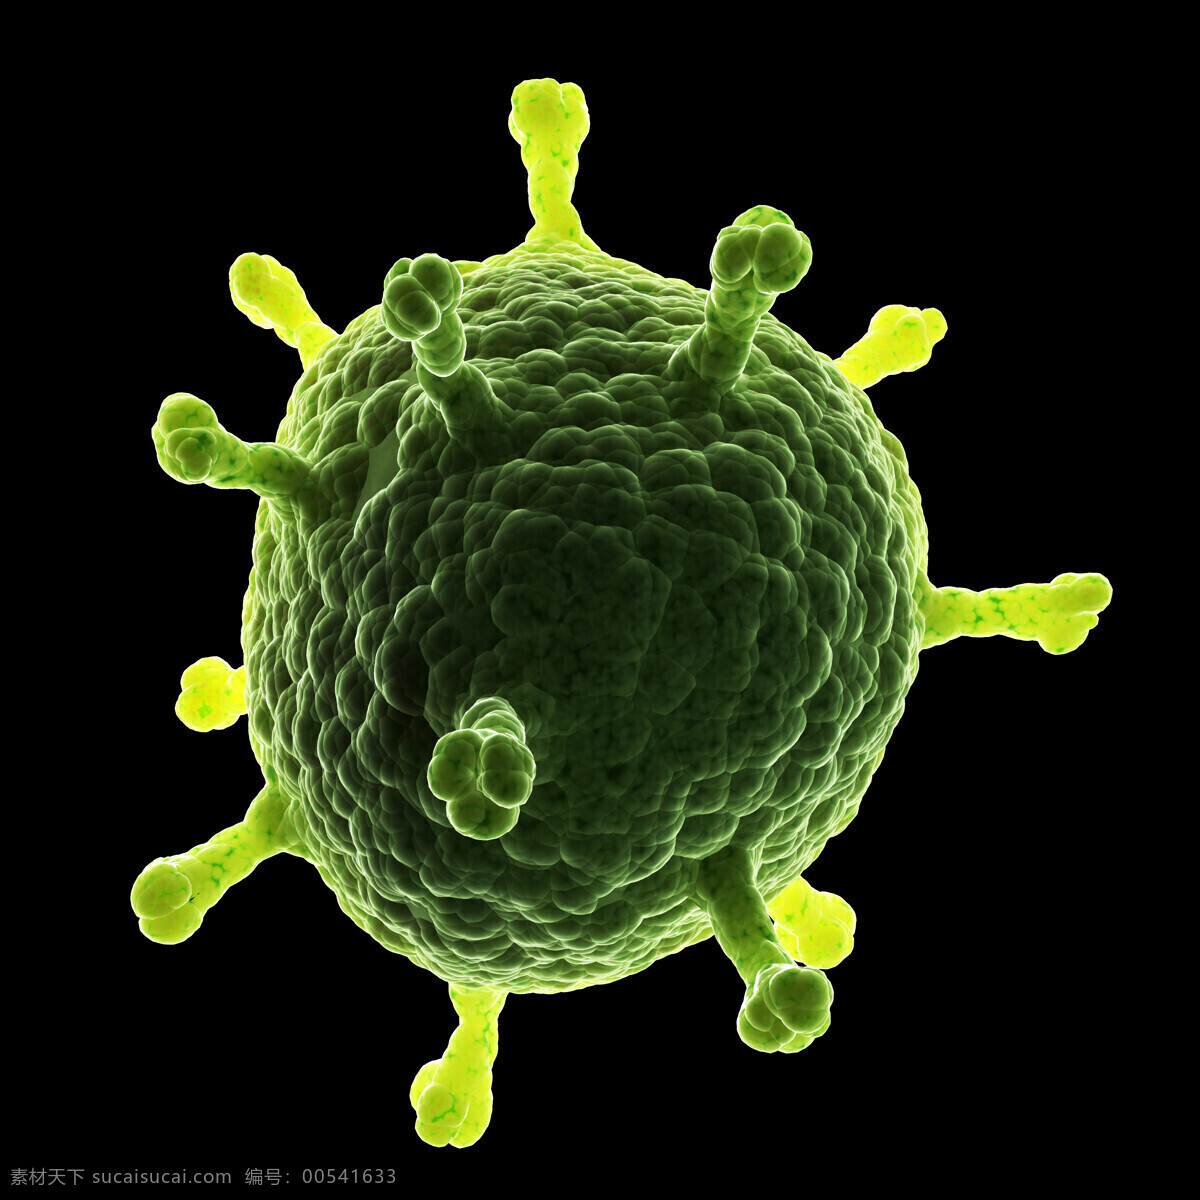 病毒 细菌 病菌 生病 感染 流感 入侵 病原体 癌症 癌变 肿瘤 细胞 病变 医学 生物 微观 显微镜 科学研究 现代科技